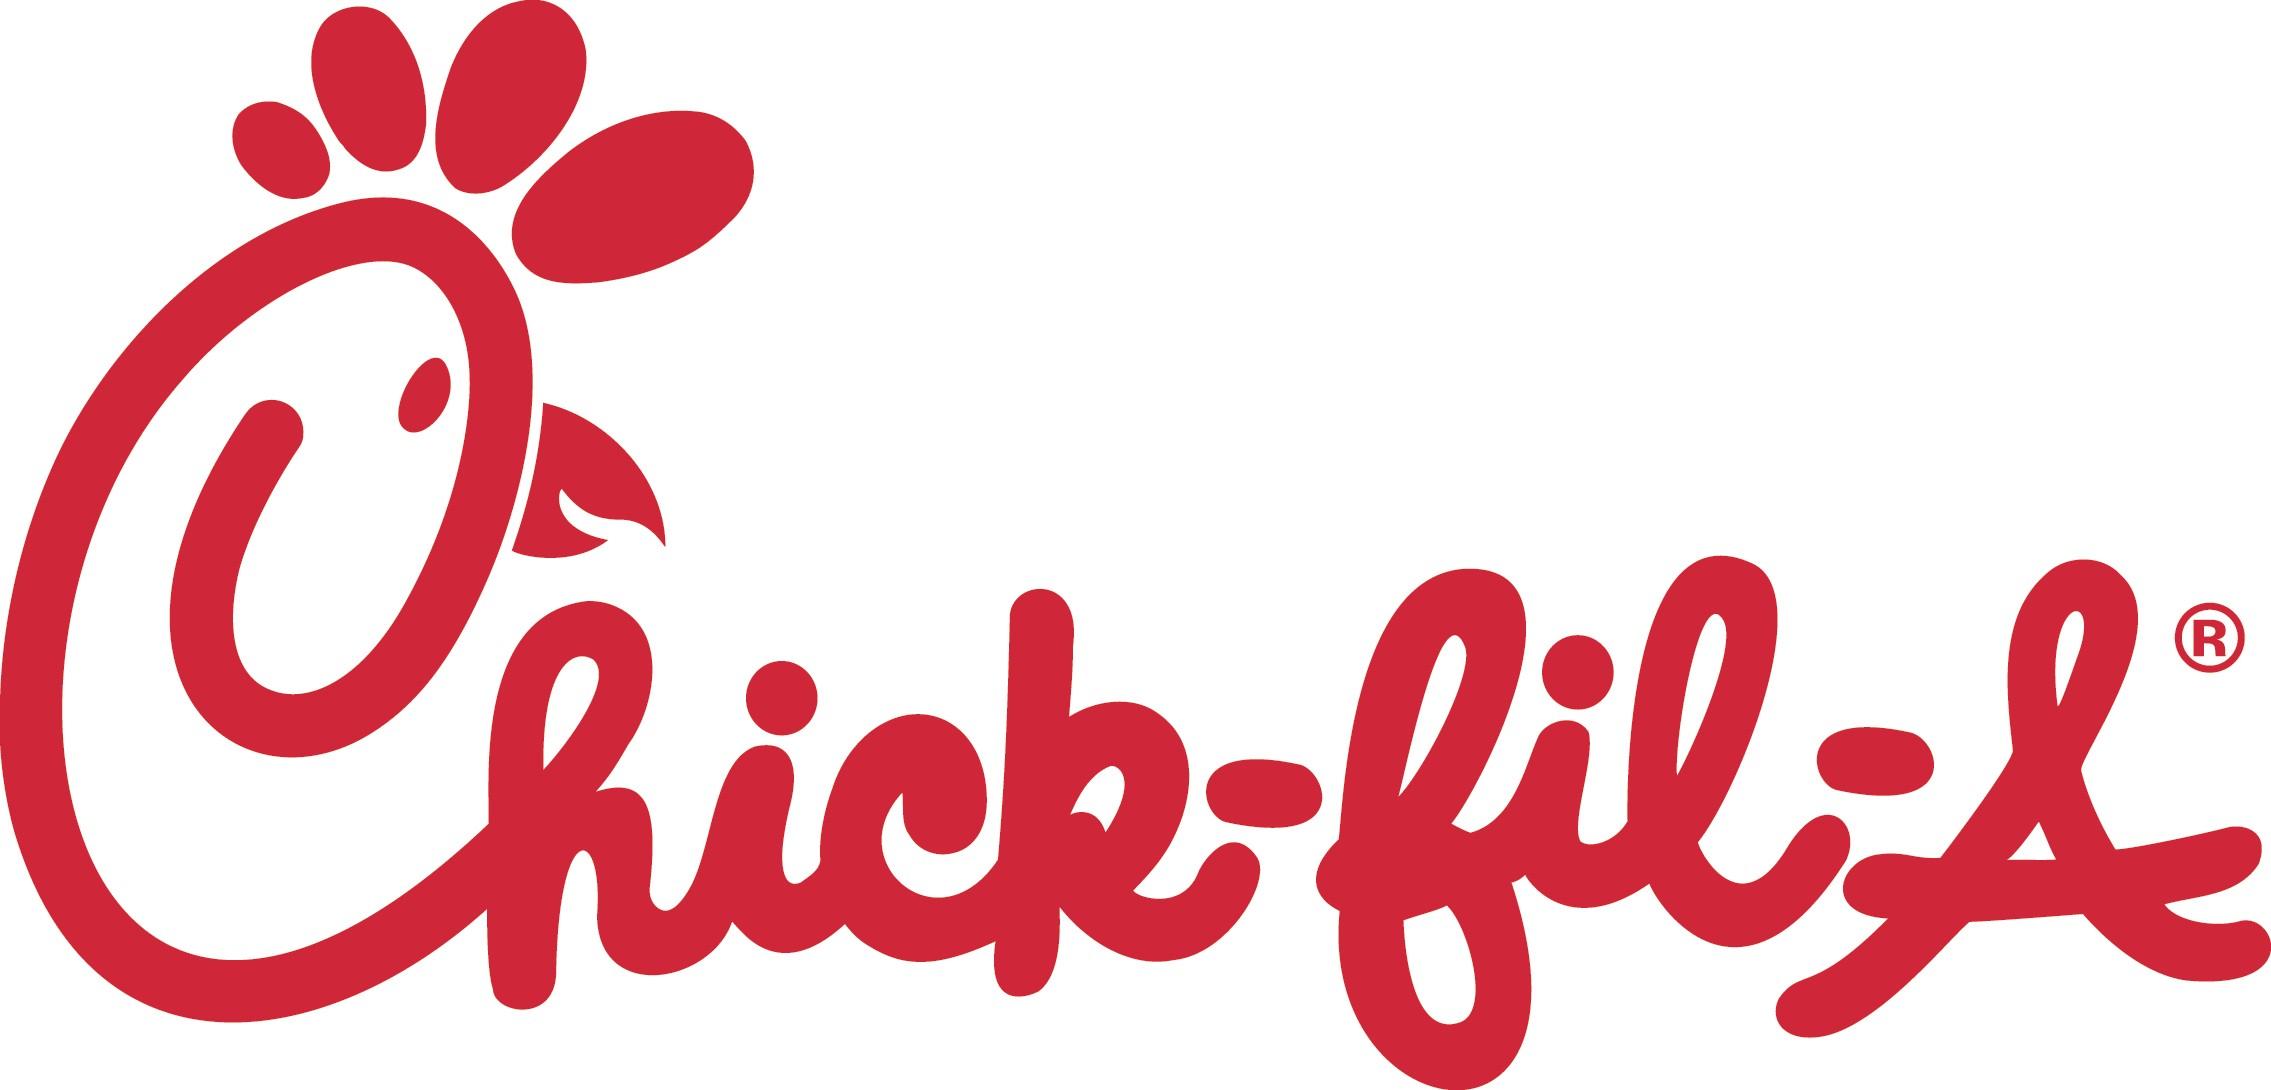 Chick-Fil-A.com Logo - Chick Fil A Logo Red